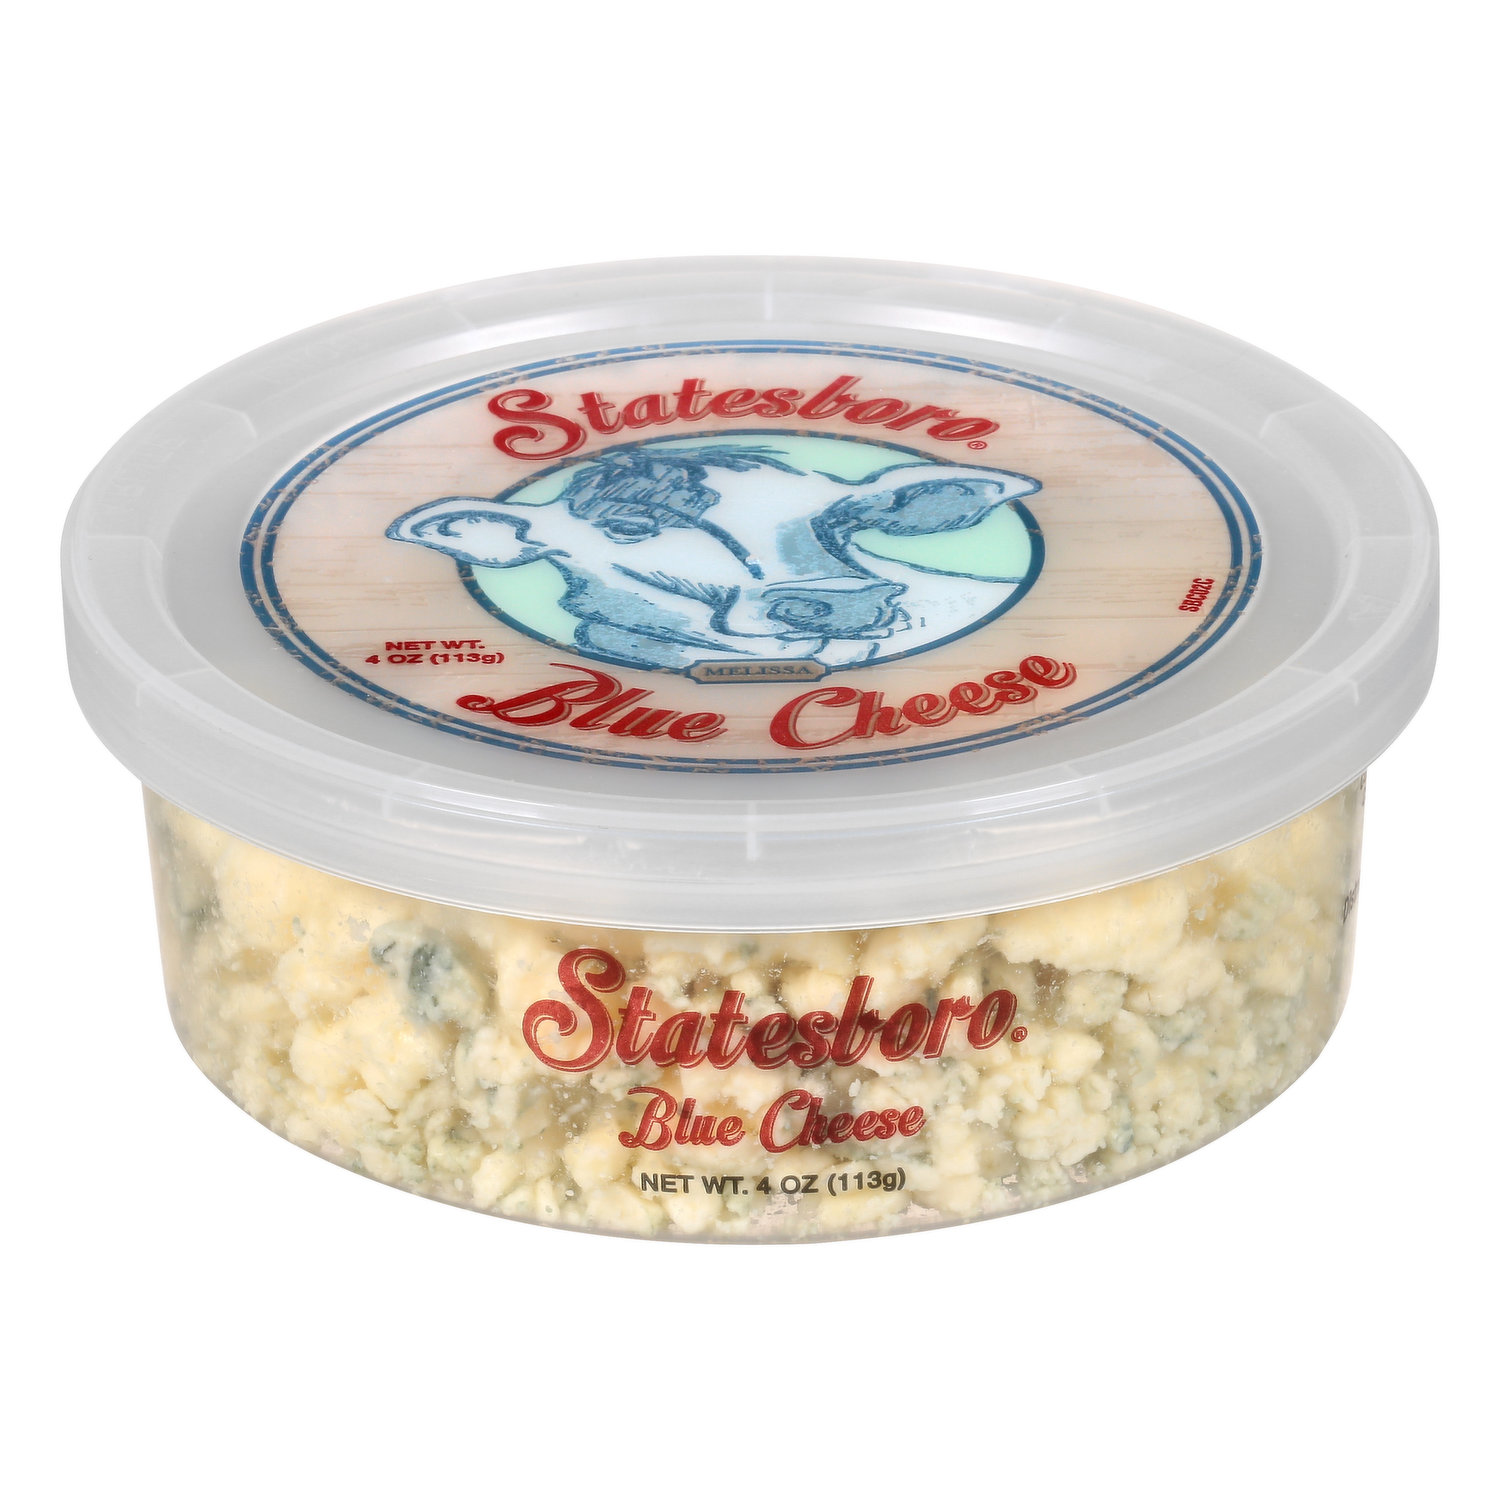 Statesboro Blue Cheese - Brookshire's